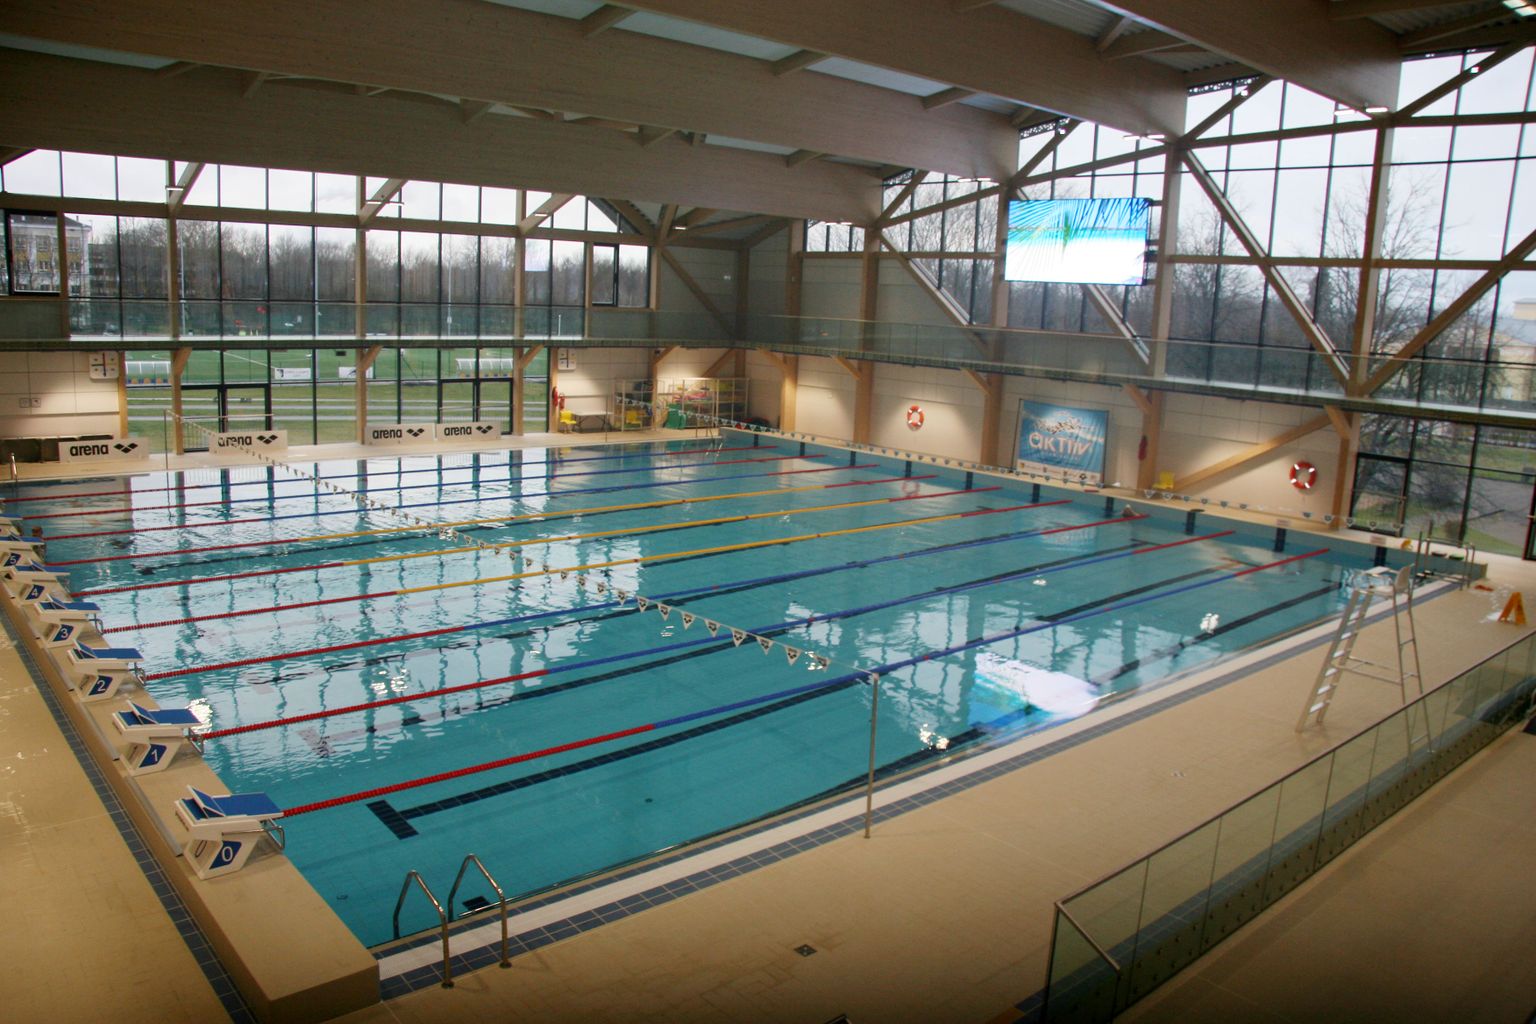 Бассейн спортцентра "Wiru" уже опробовали и высоко оценили клубы плавания из разных городов страны.